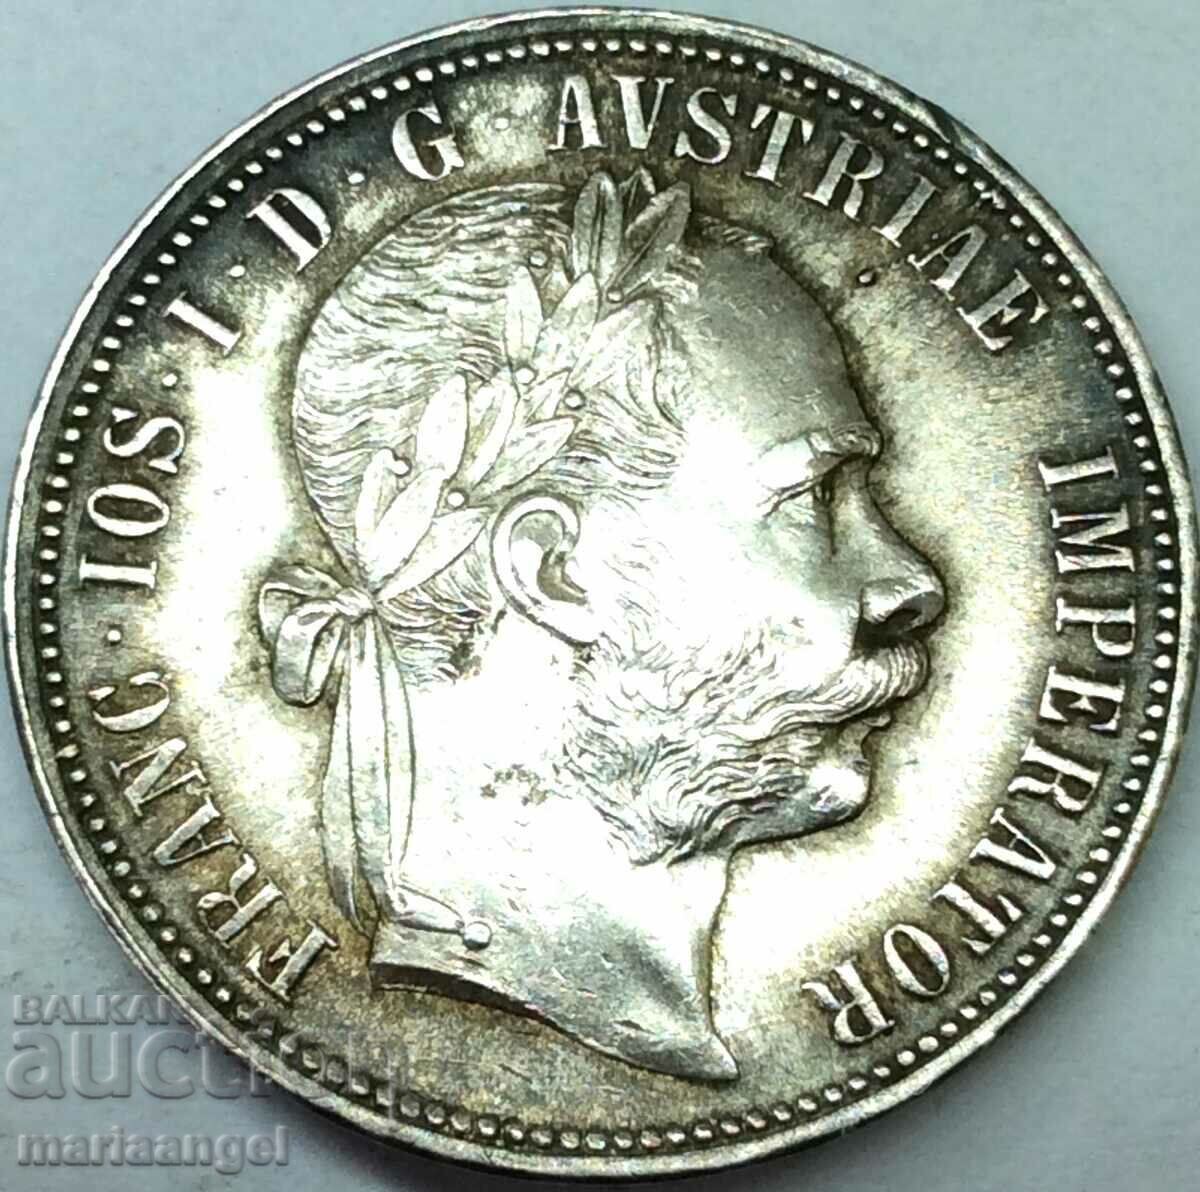 Austria 1 florin 1889 Franz Joseph silver